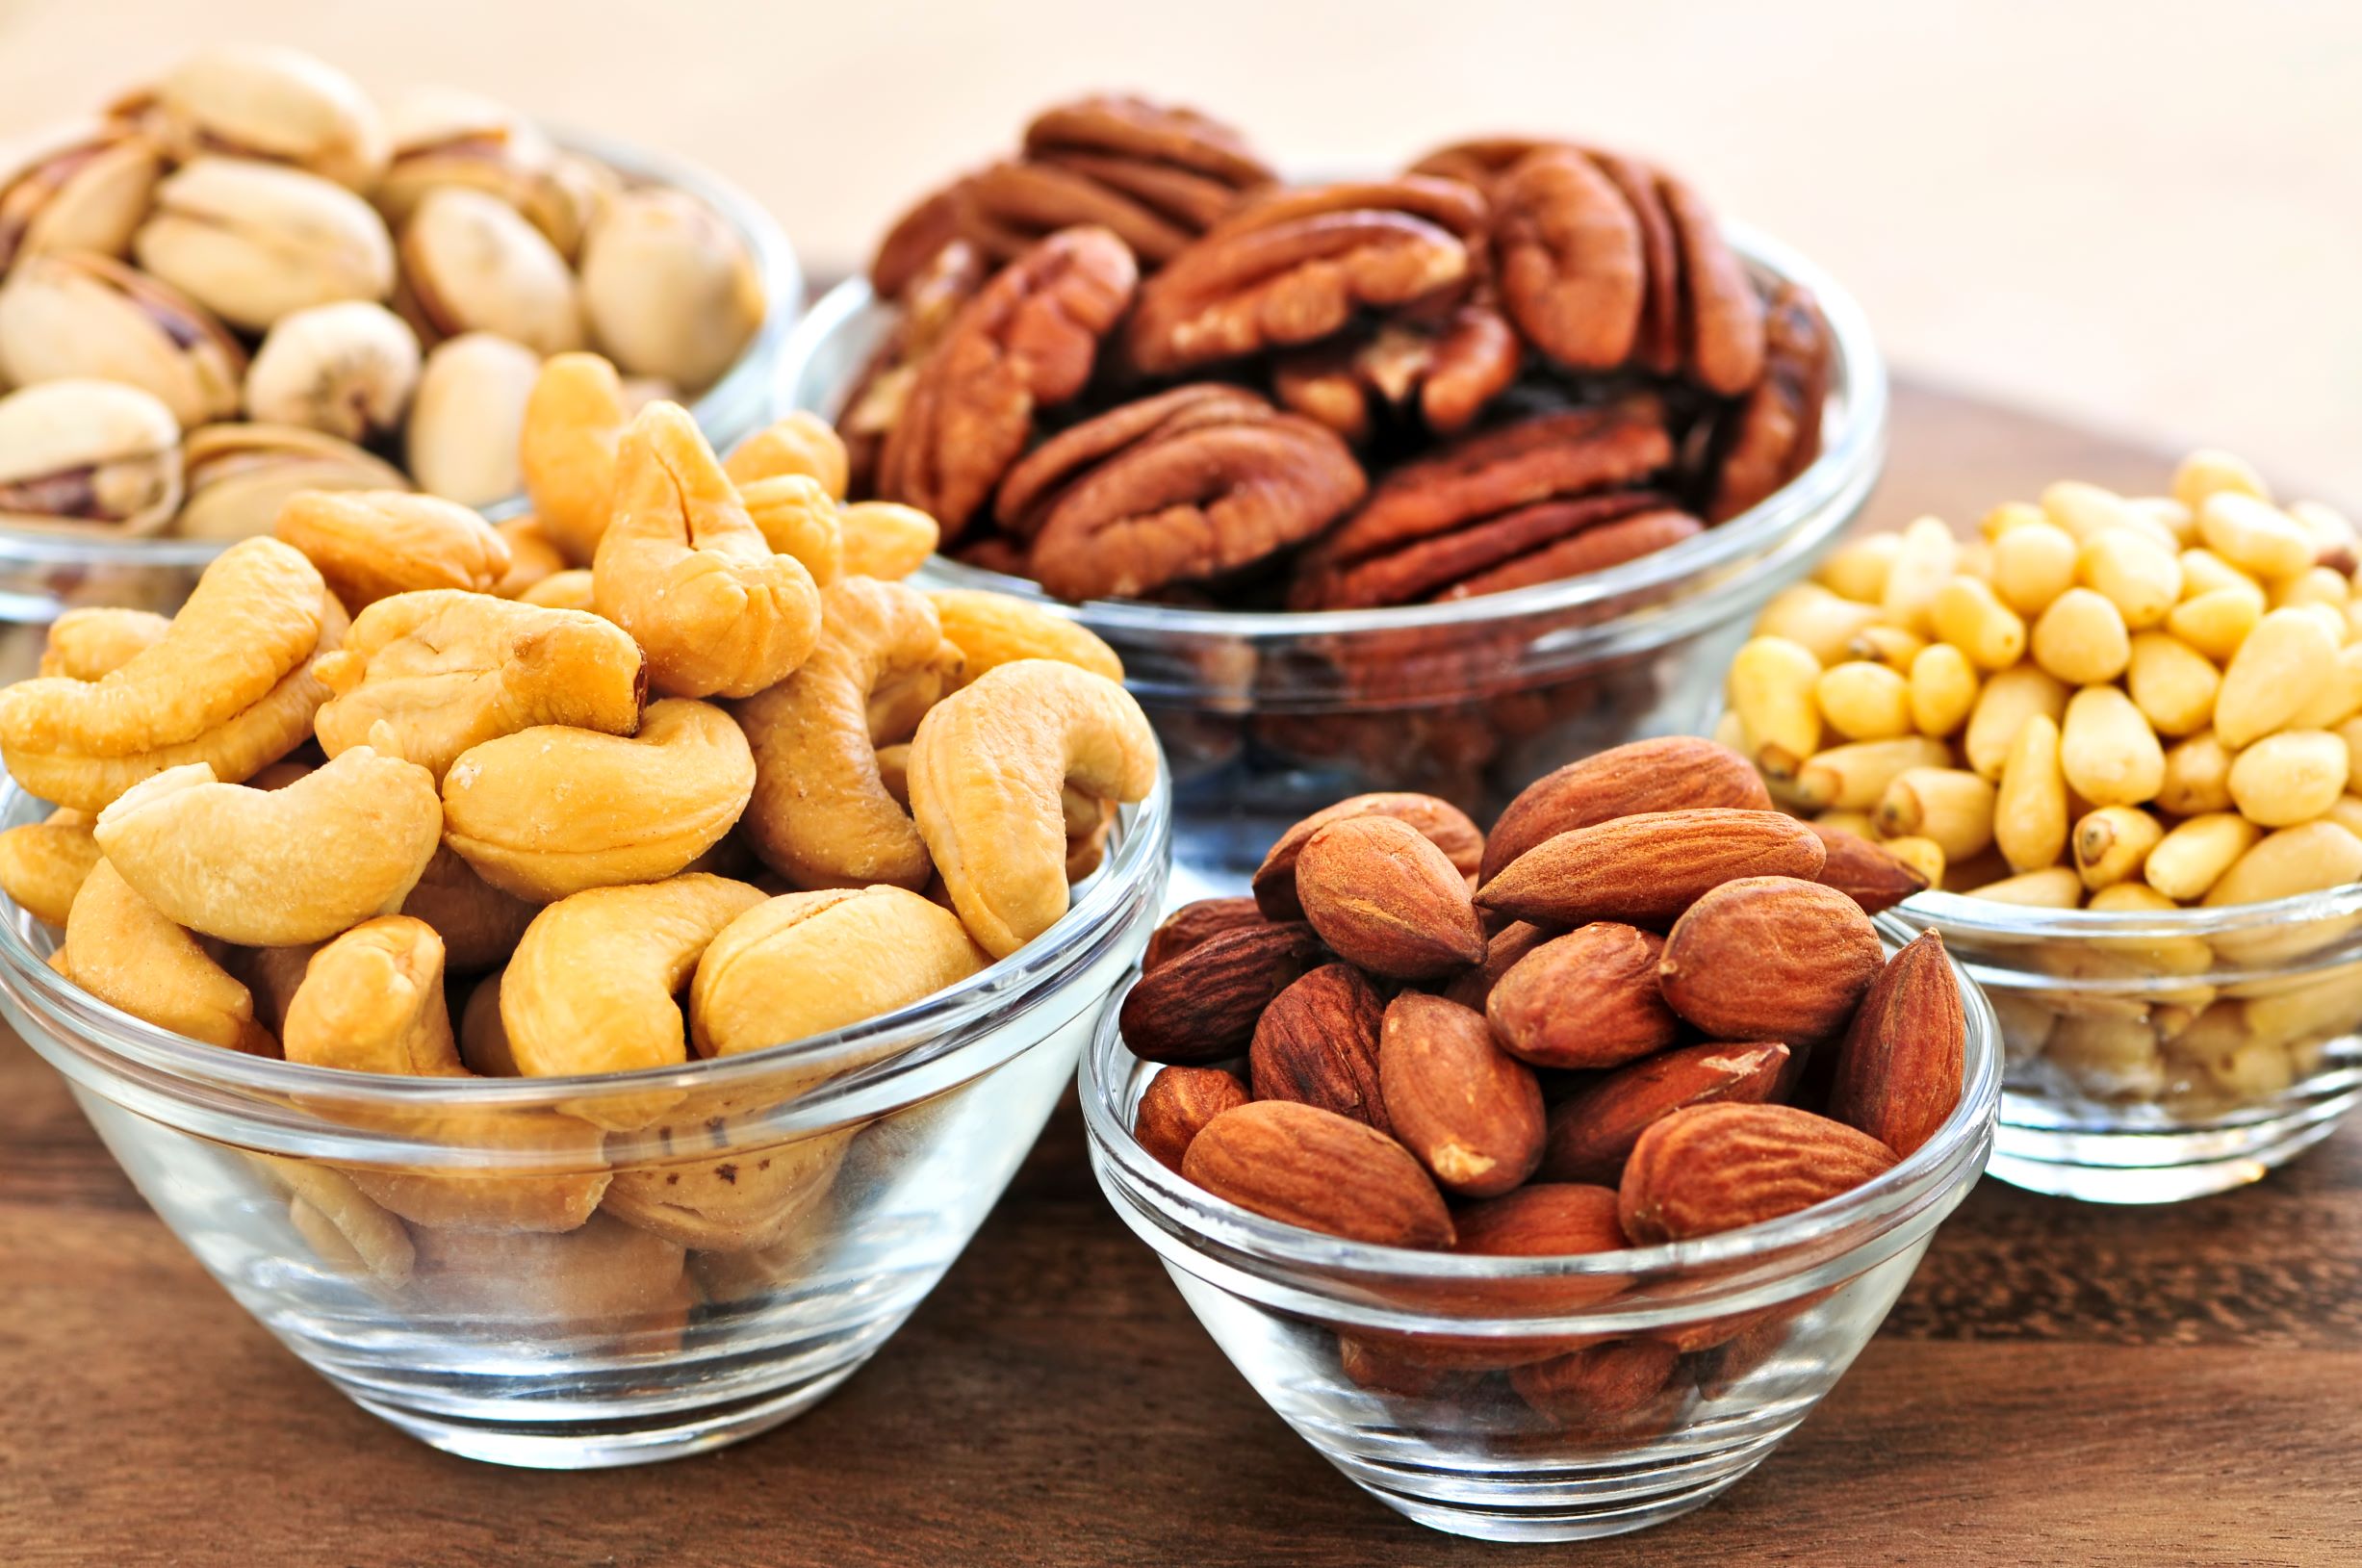 Орехи и семена содержат магний, который предотвращает появление камней в почках.